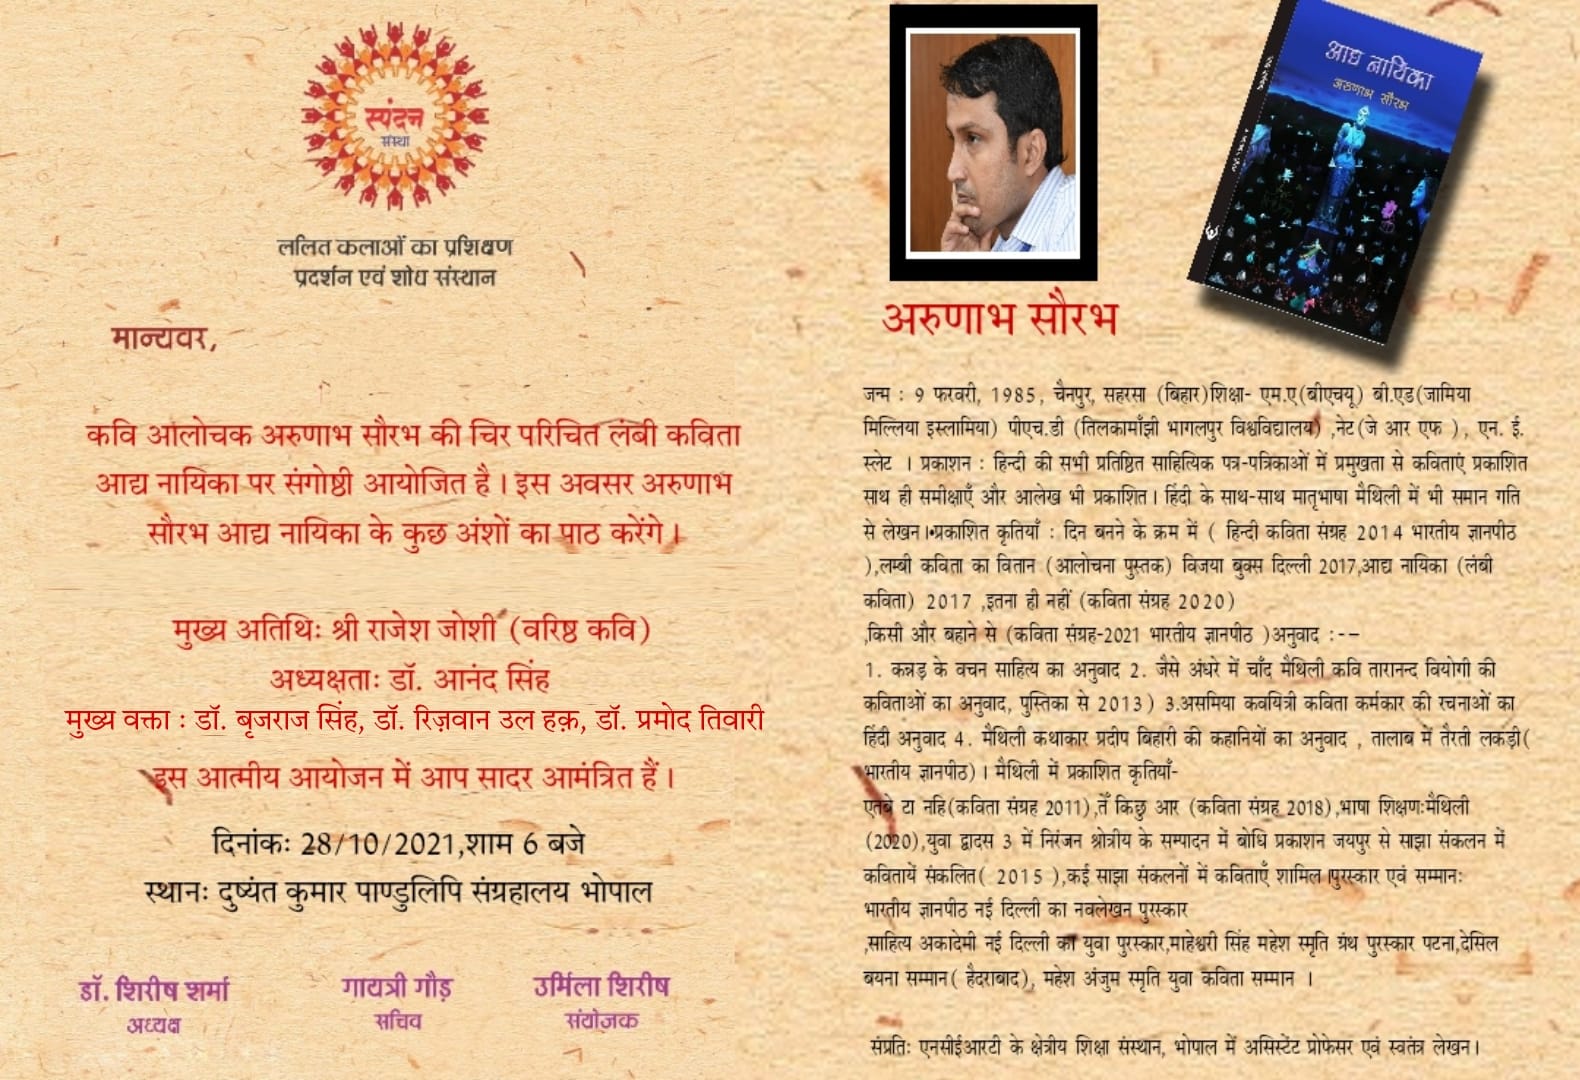 कवि अरुणाभ सौरभ की कविता 'आद्य नायिका' पर संगोष्ठी आज, ख्यात साहित्यकार शामिल होंगे